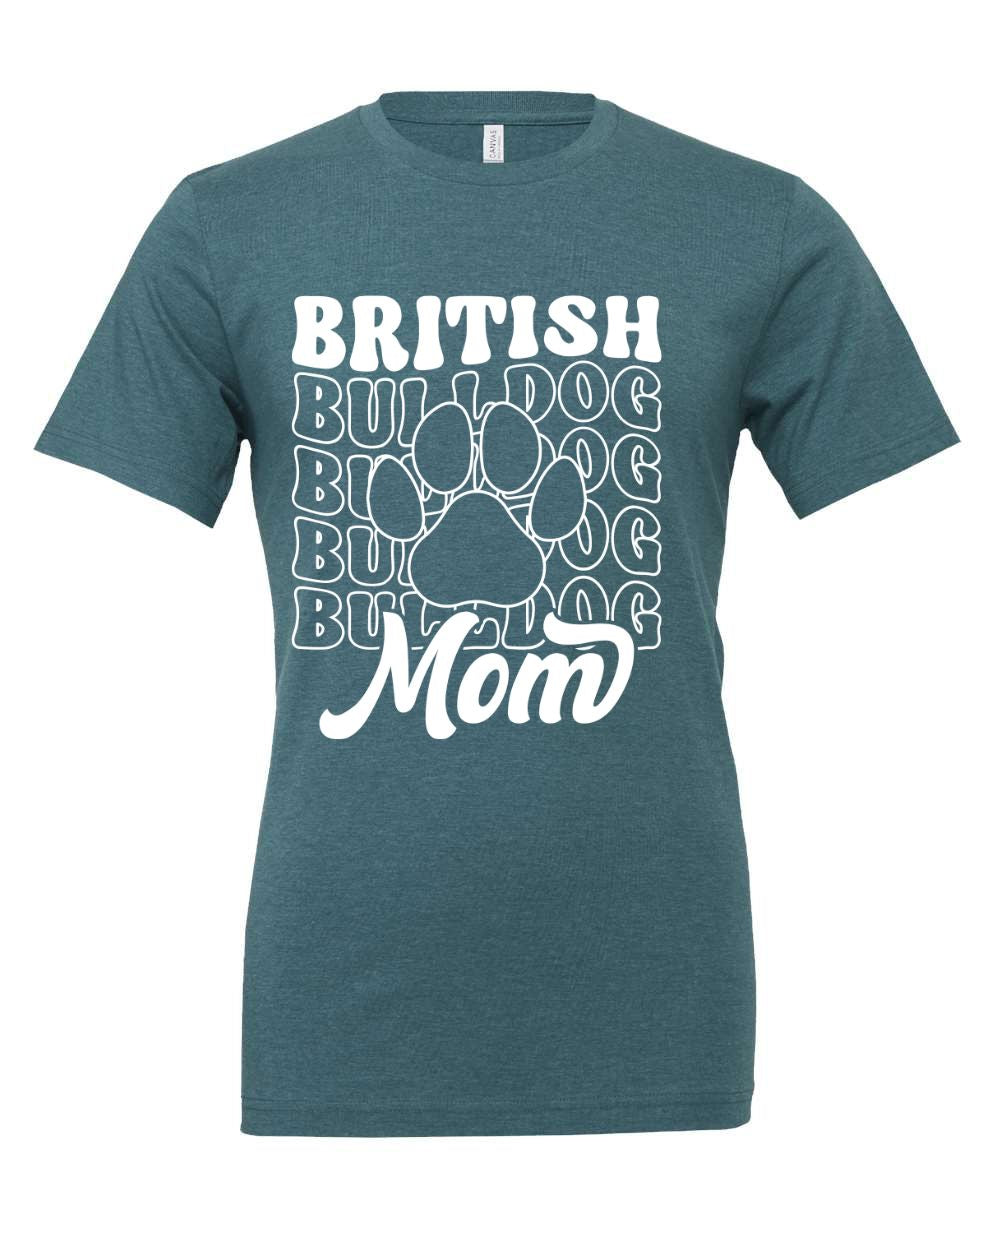 British Bulldog Mom Version 1 T-Shirt